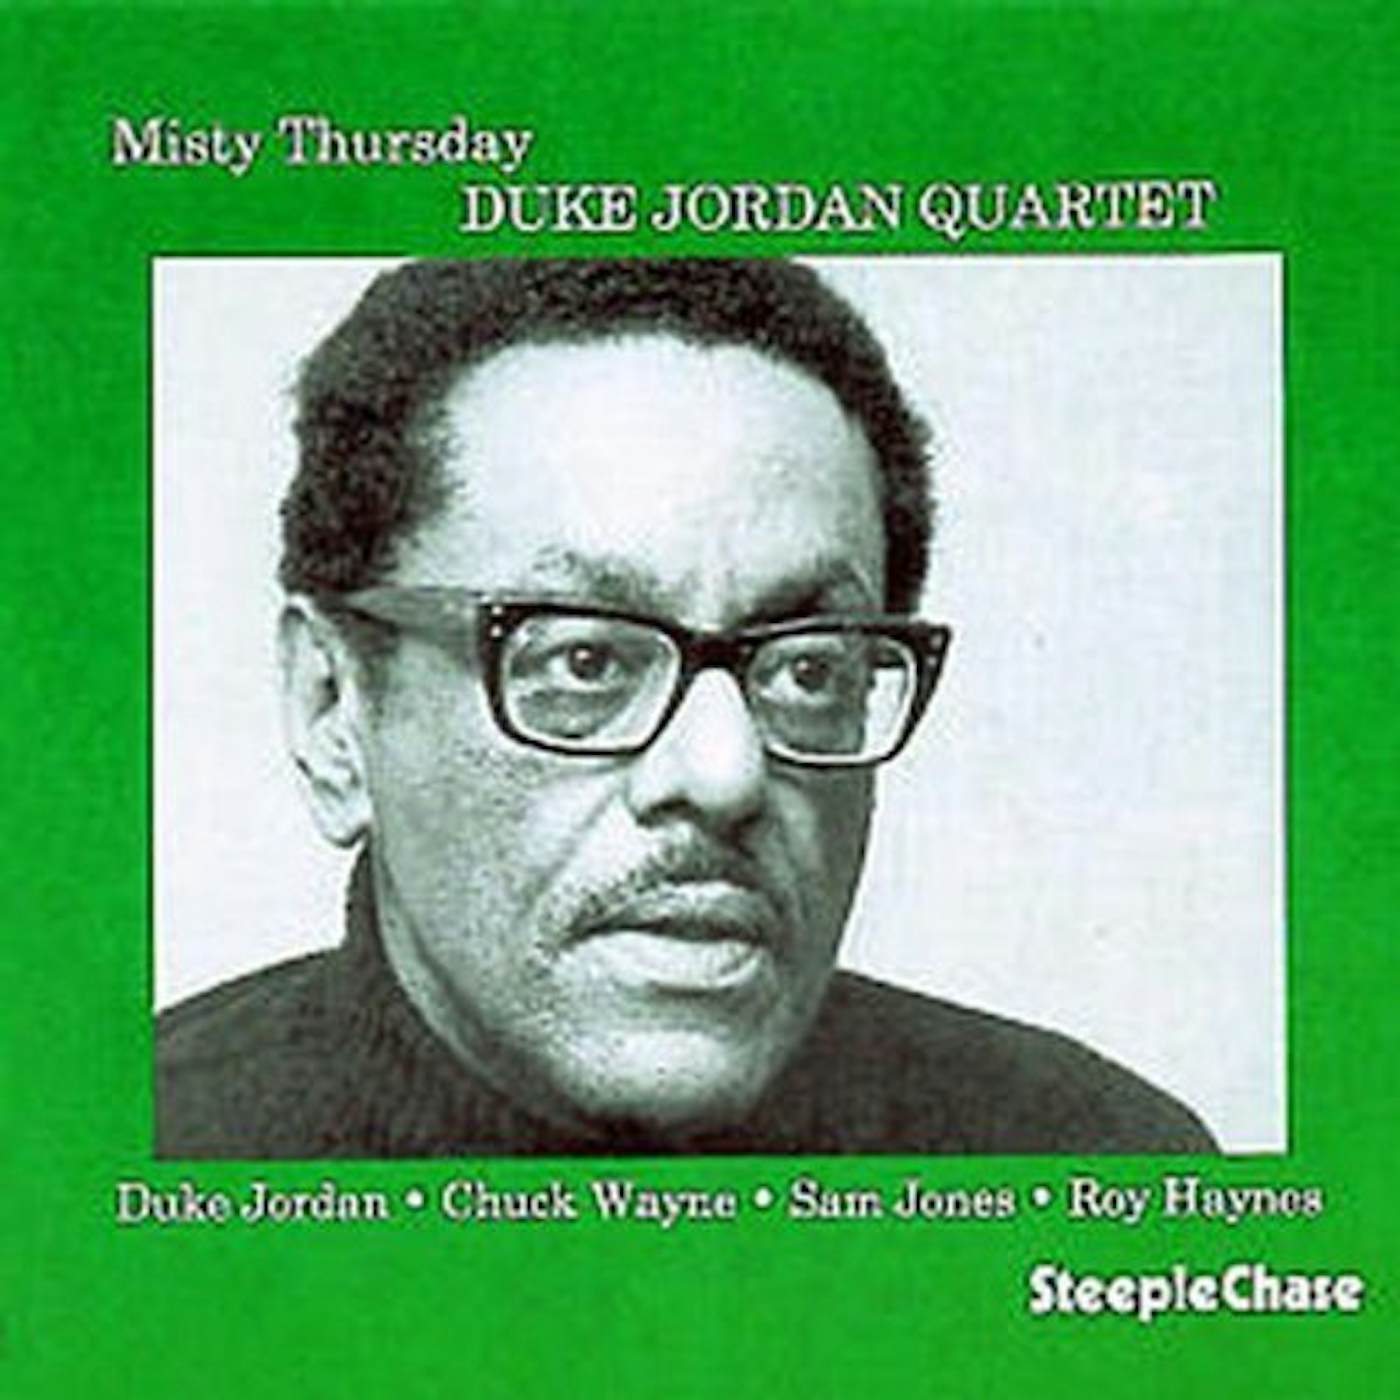 Duke Jordan MISTY THURSDAY CD